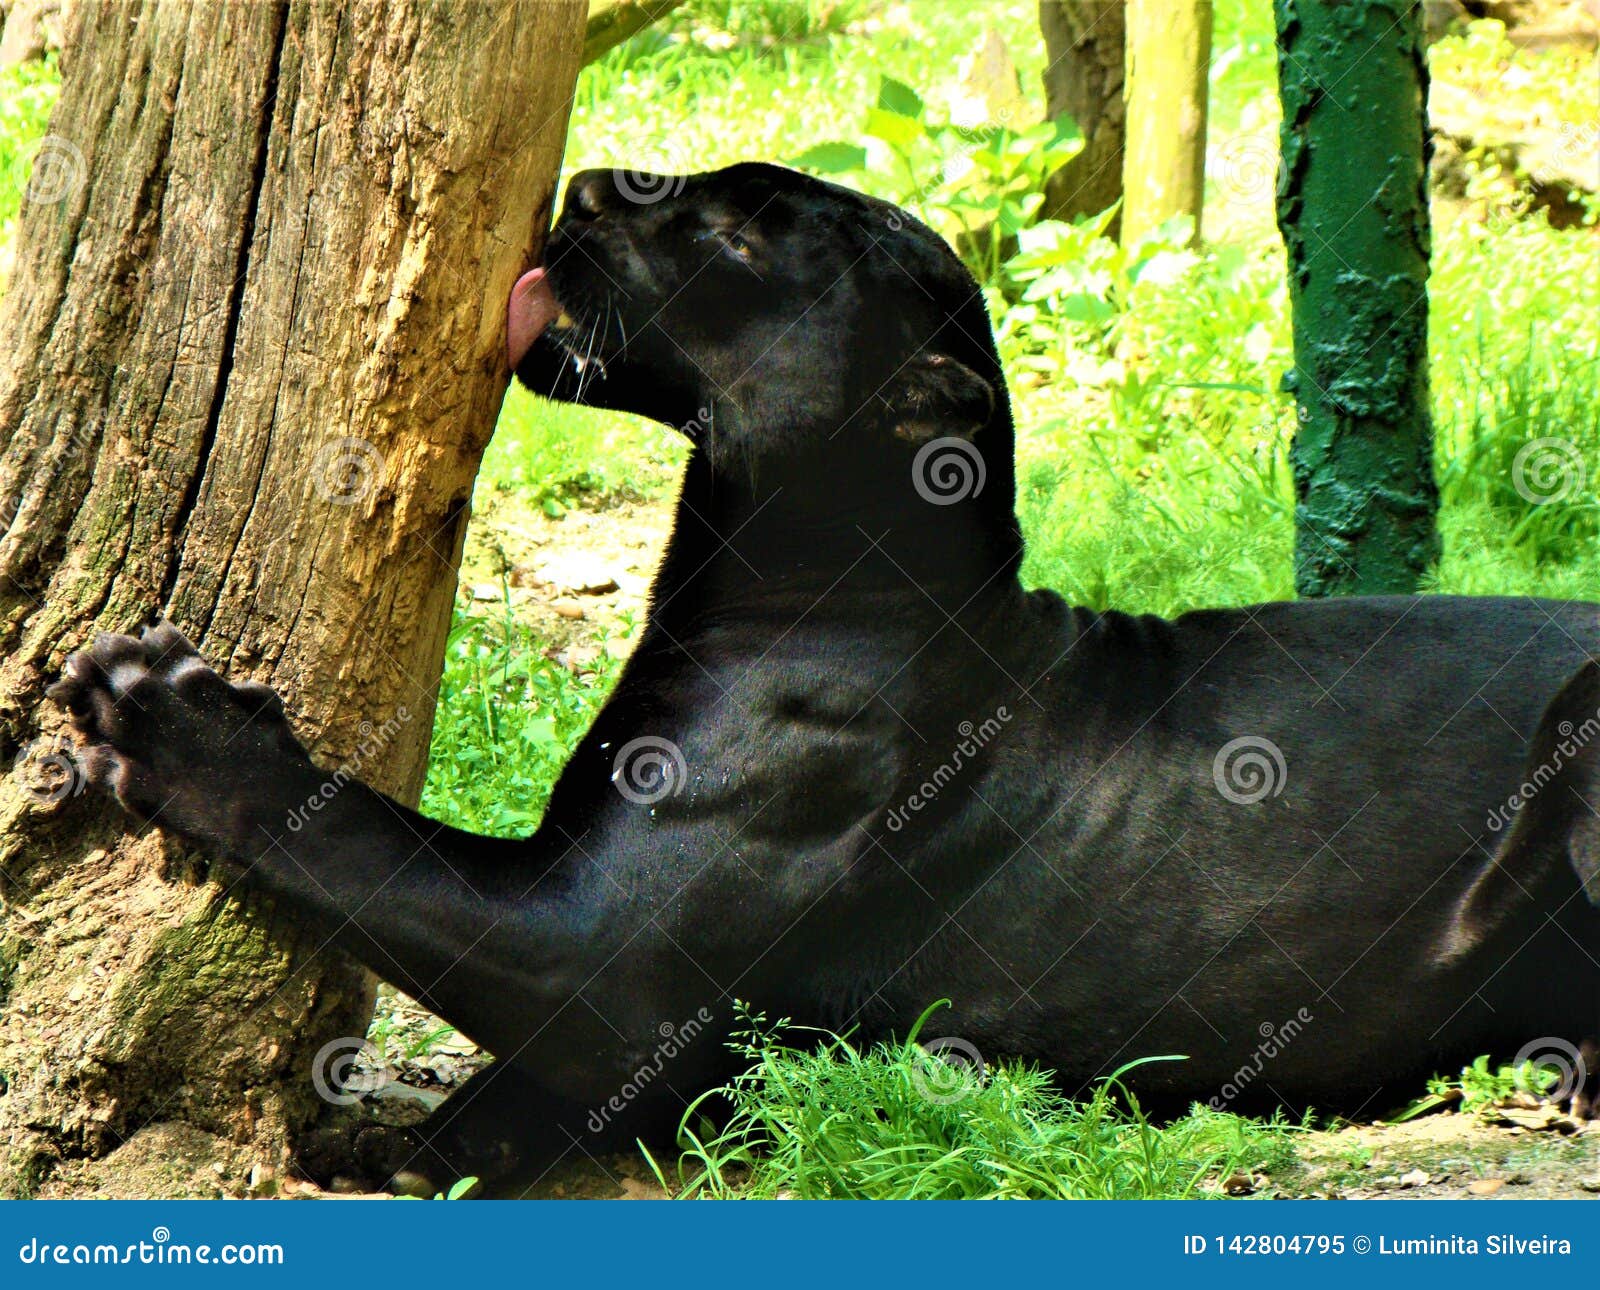 black puma animal pictures